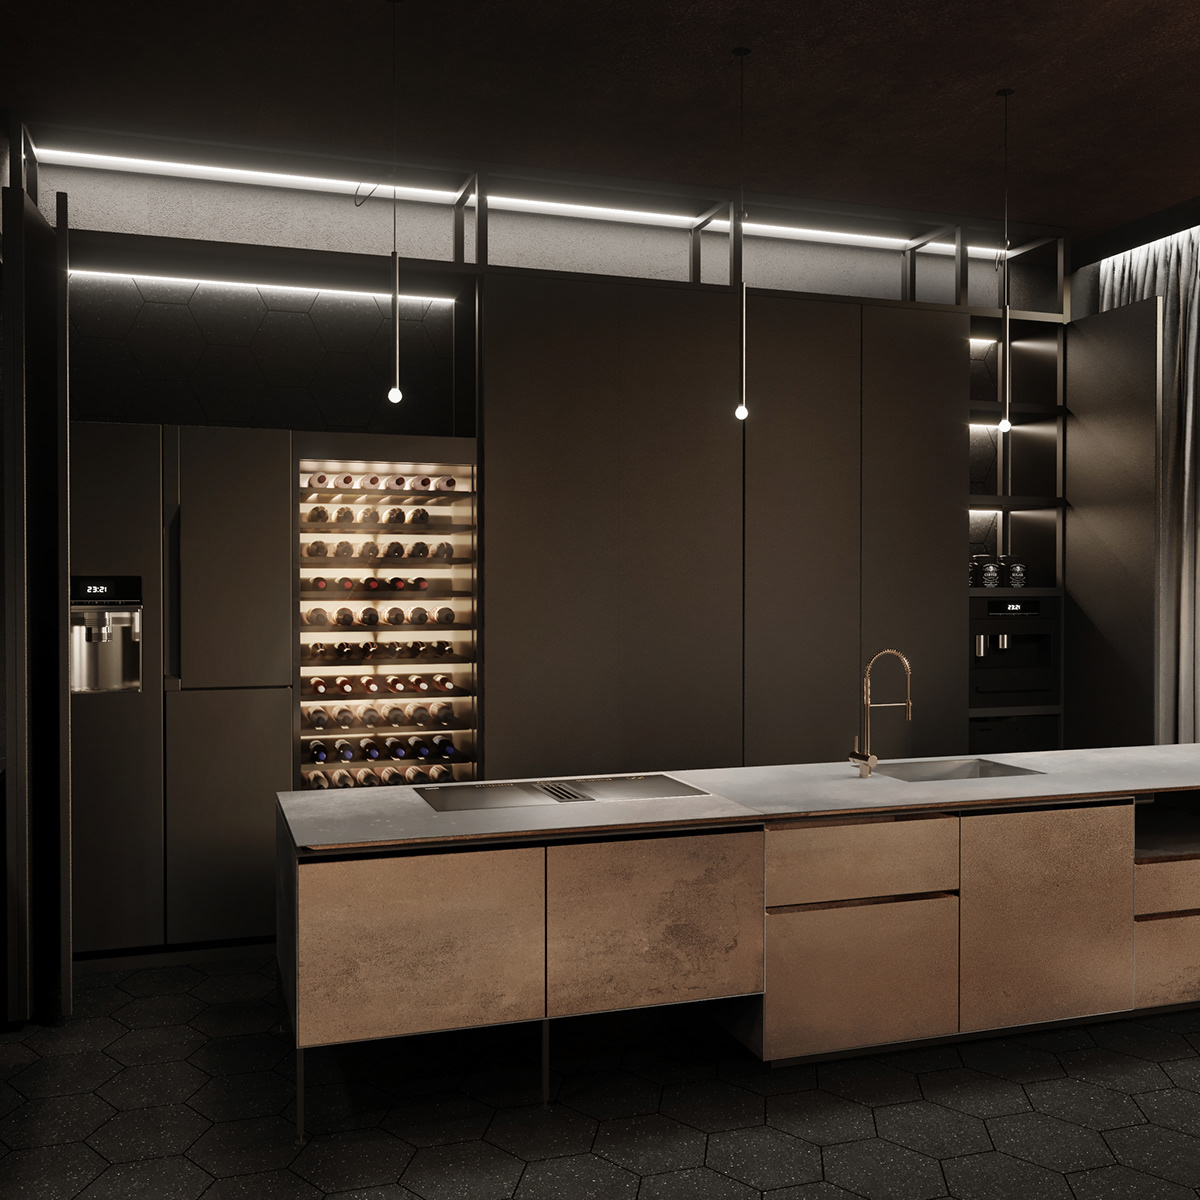 3D Visualization architecture black interior BLACK INTERIOR DESIGN Dark interior industrial industrialdesign interior designn kitchen design minimalistic